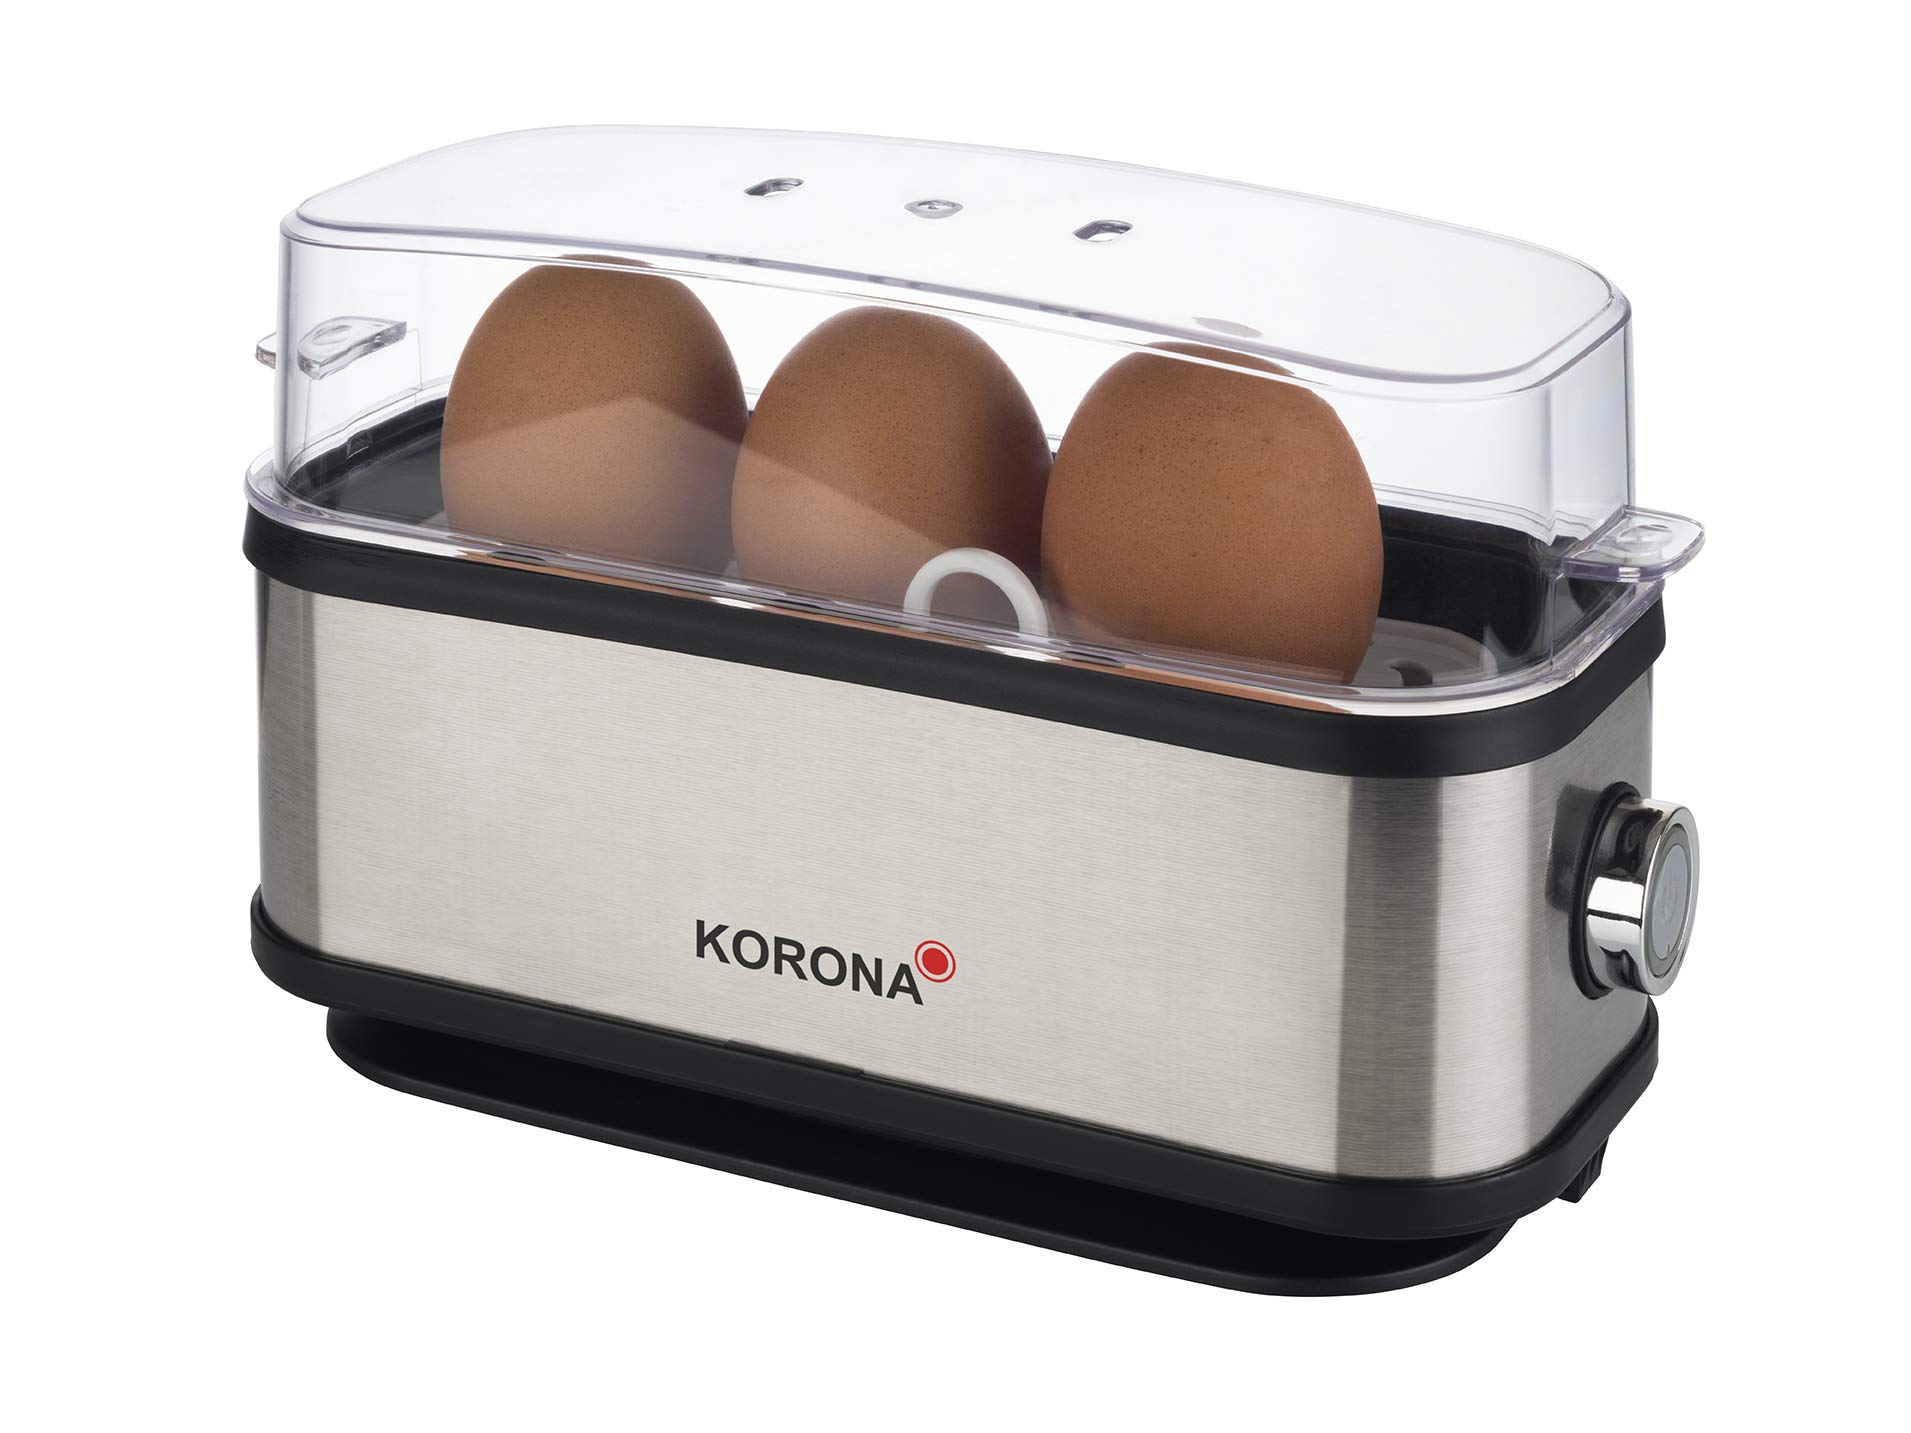 Korona 25304 Eierkocher | 1 bis 3 Eier | Single - Eierkocher | 210 Watt | Edelstahlgehäuse | Kabelaufwicklung, silber schwarz, 25304 | 1-3 eier